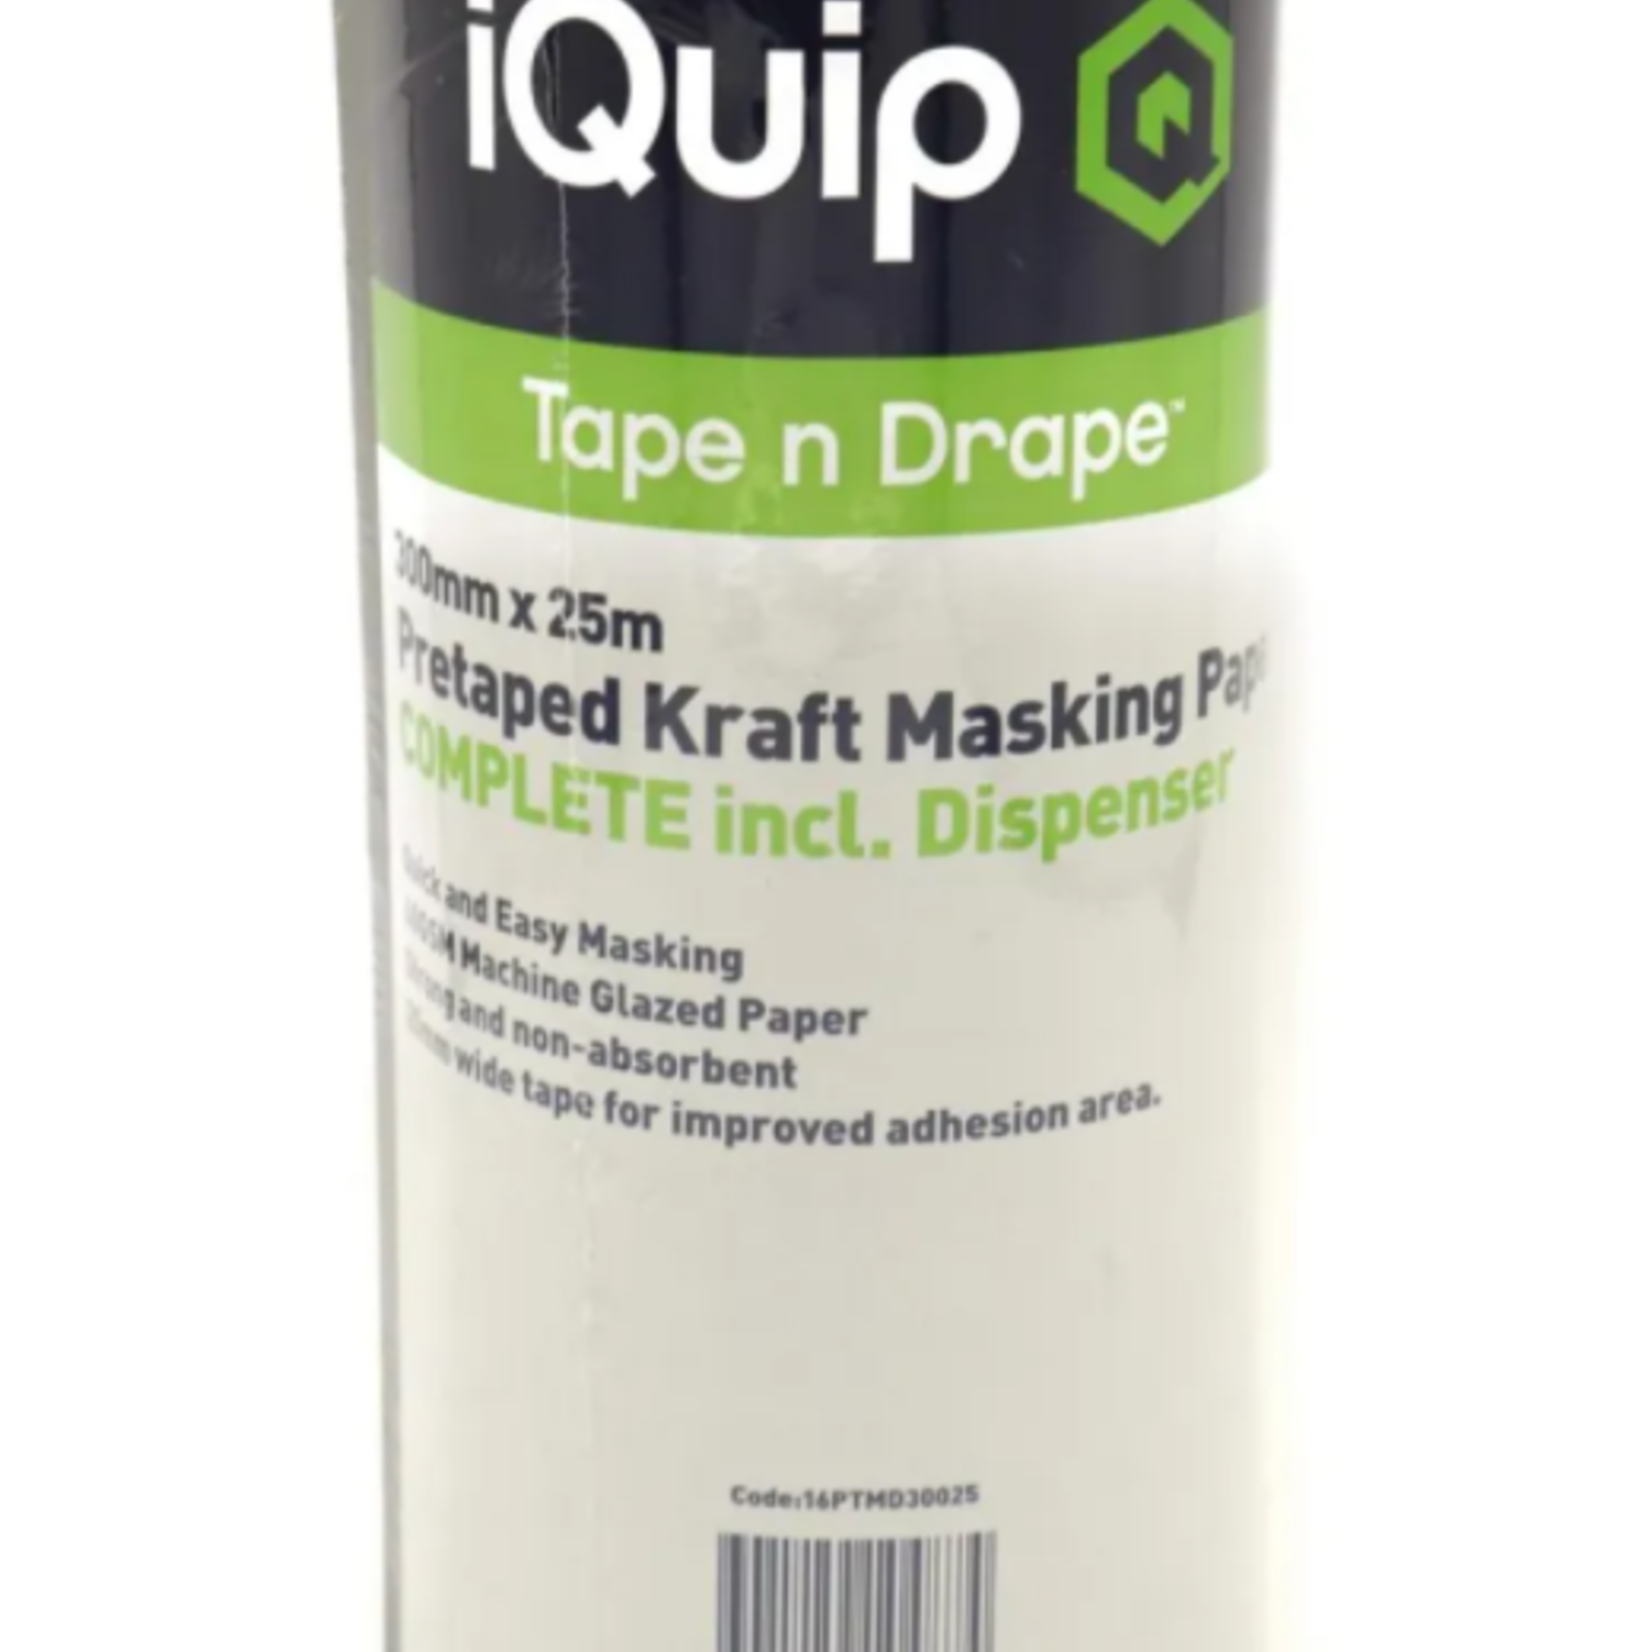 iQuip iQuip Pretaped Kraft Masking Paper Disp. 300mm x 25m